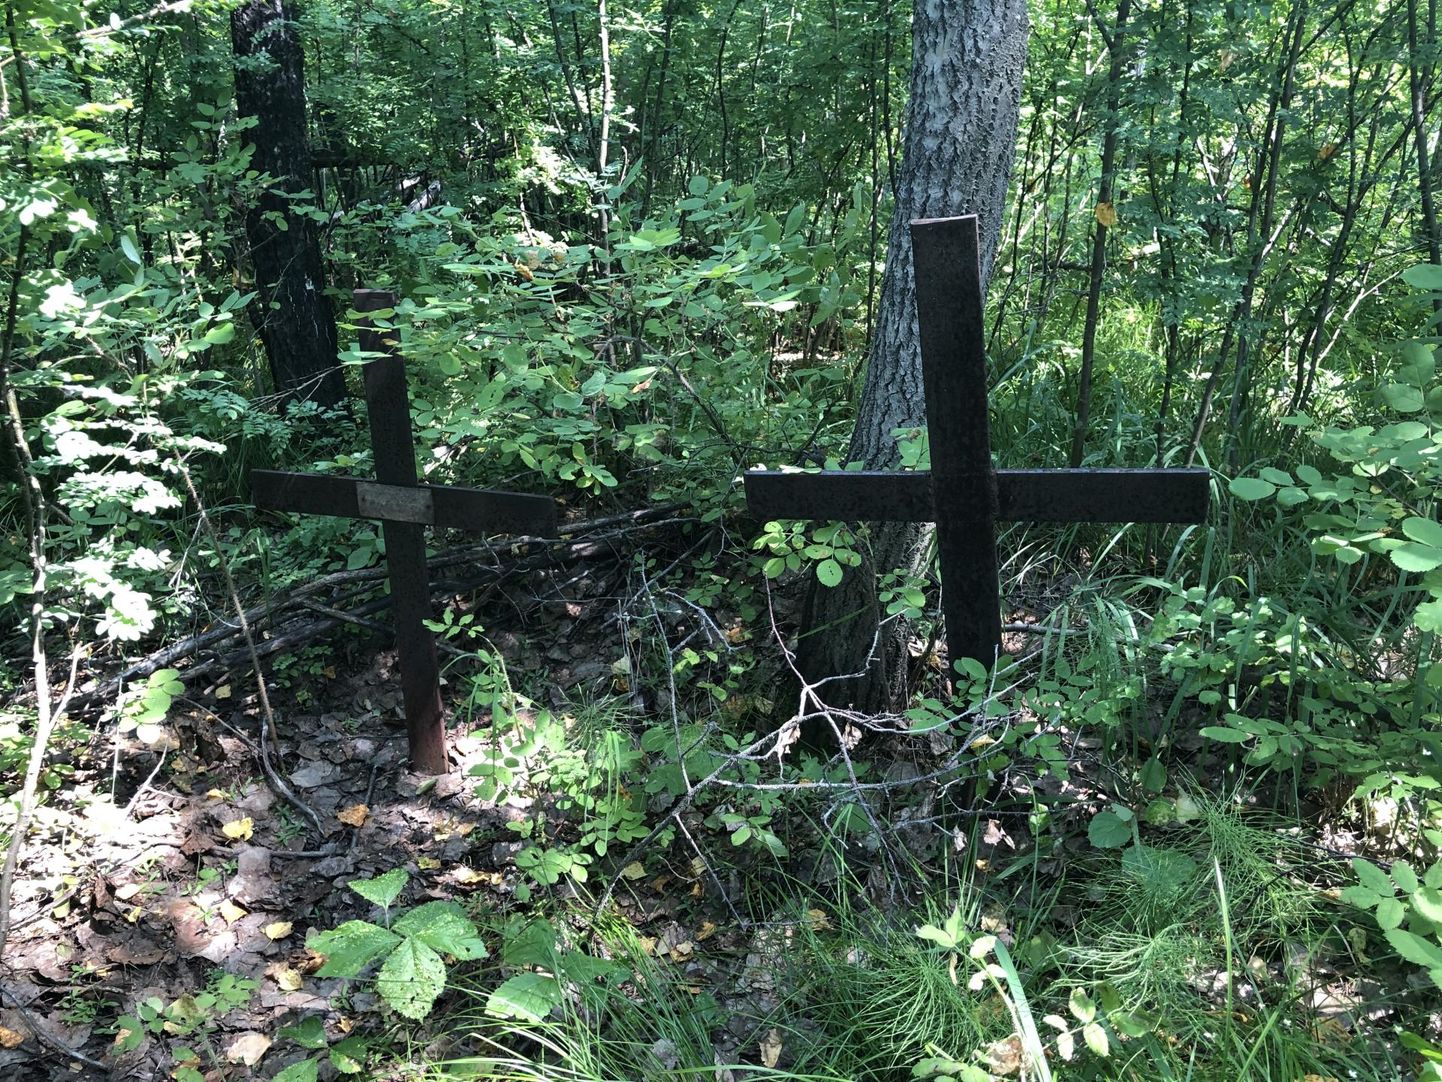 Eestlaste kalmistu Siberis Petrovski külas aastal 2019. Kokku leidsid Eestist tulnud haudade otsijad toona kümmekond risti, neist mõni ka nimeline: Lehes Juhan, Troska Karl, Tolmof Elviine.